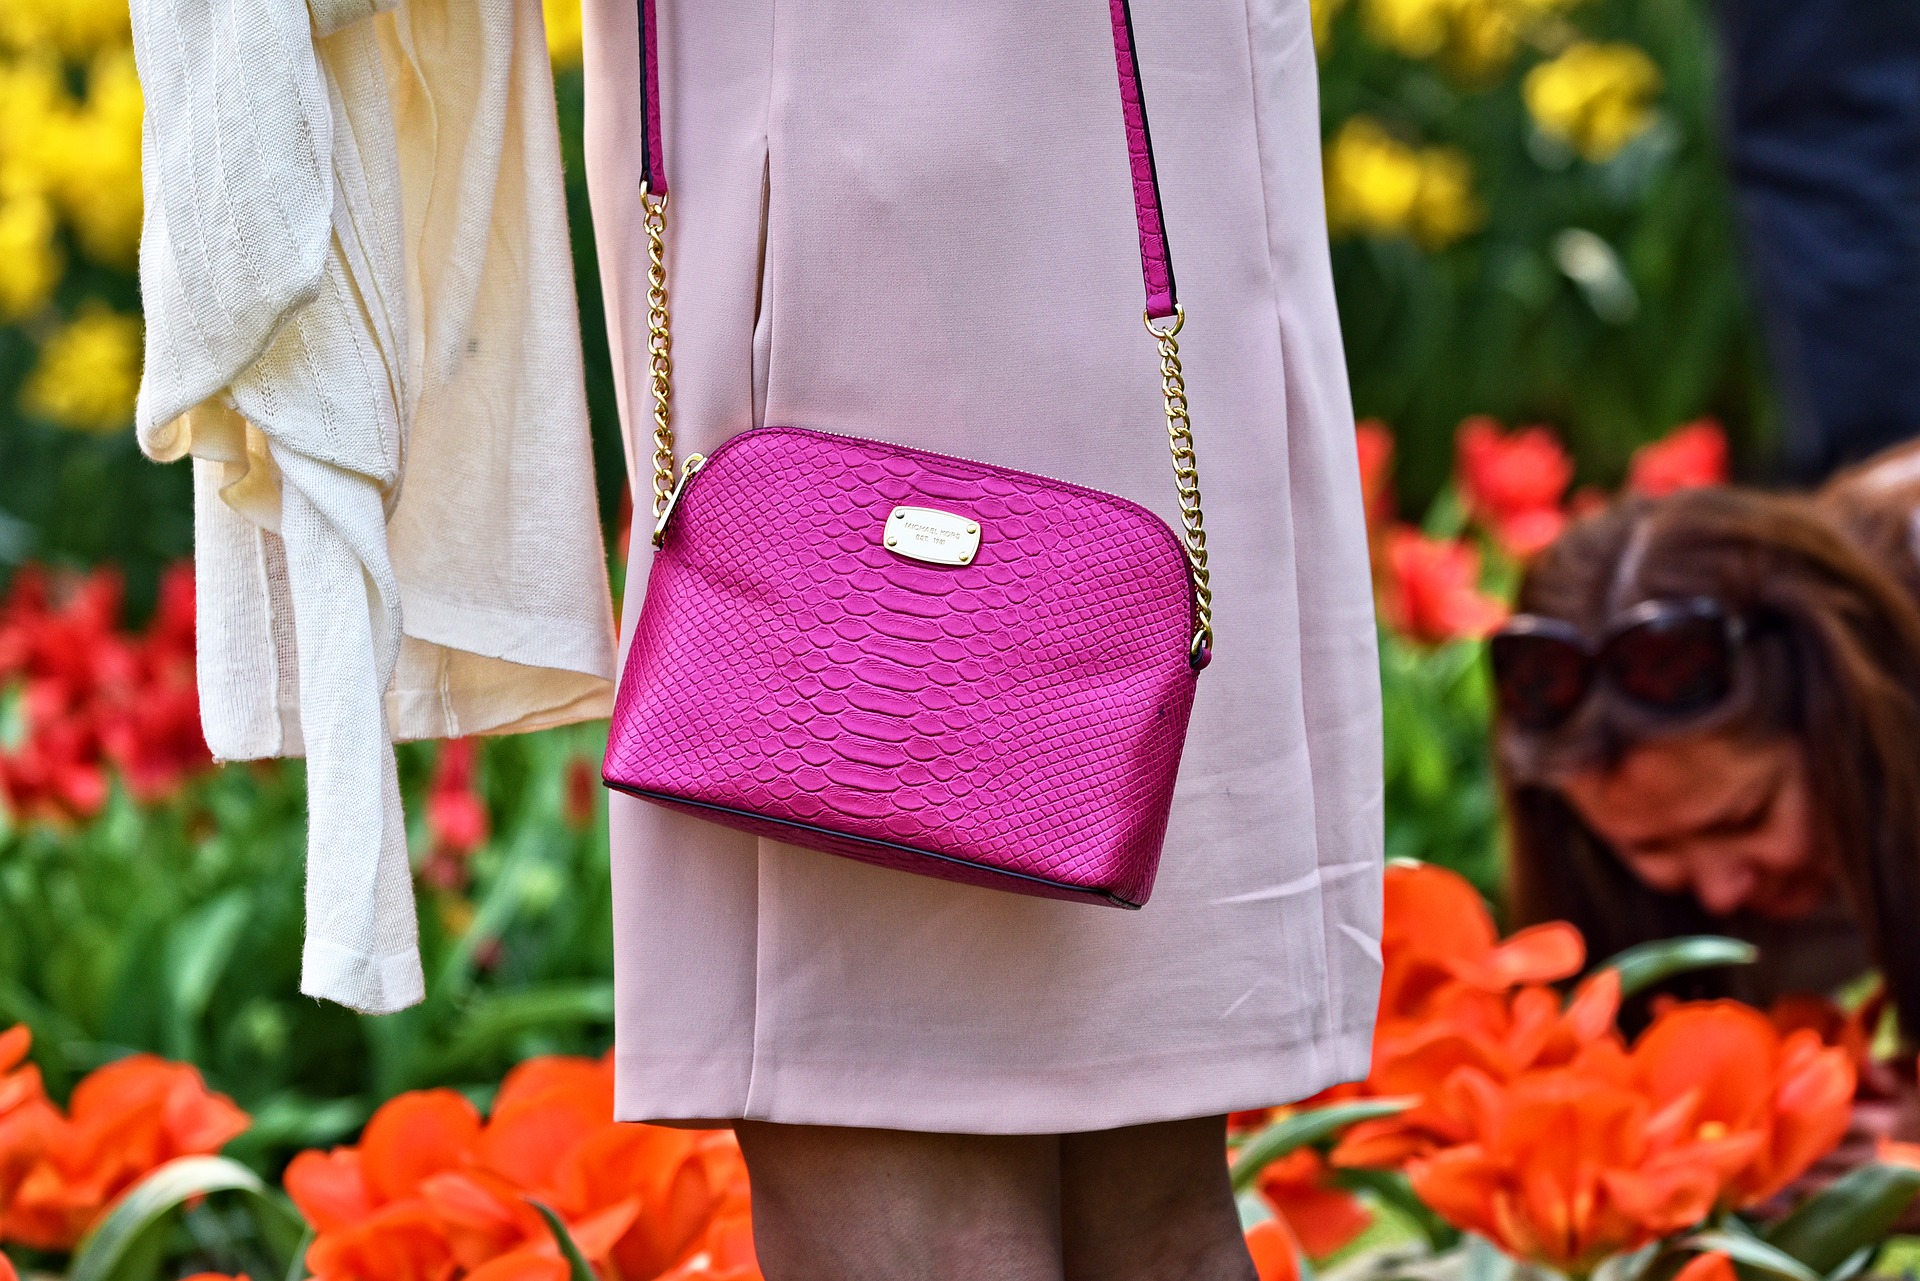 海外セレブや芸能人も愛用♡イヴ・サンローランのバッグが人気の理由 | 芸能人の衣装通販ブログ